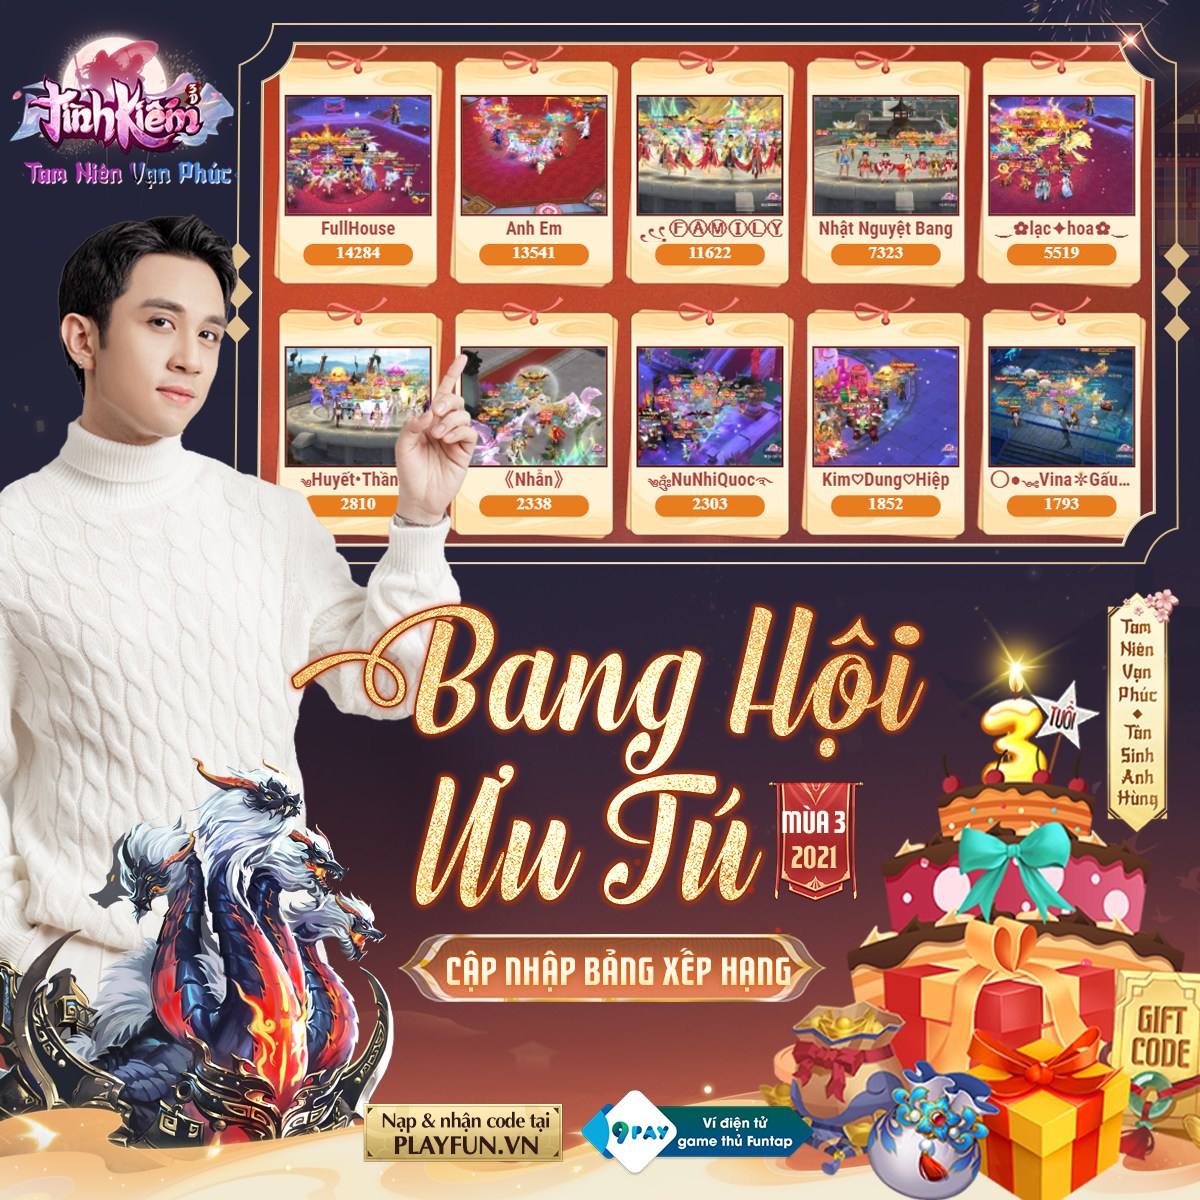 Đón sinh nhật Tình Kiếm 3D cùng “Hoàng Tử Cover” đình đám trong showbiz Việt? 3